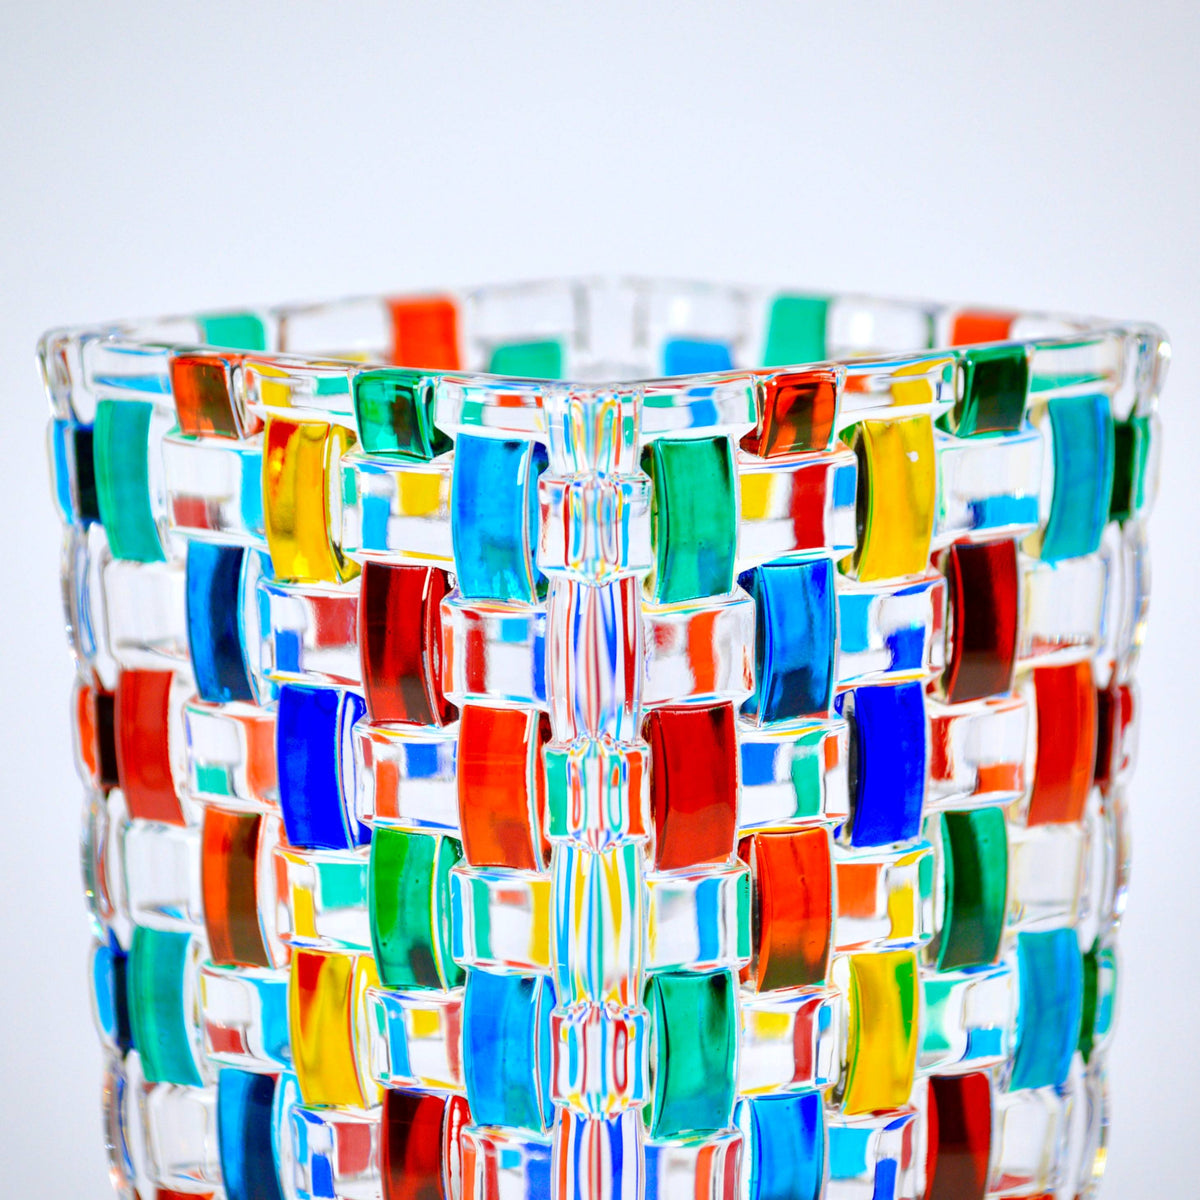 Bossanova Vase, Medium, Hand Painted Crystal, Made in Italy - My Italian Decor